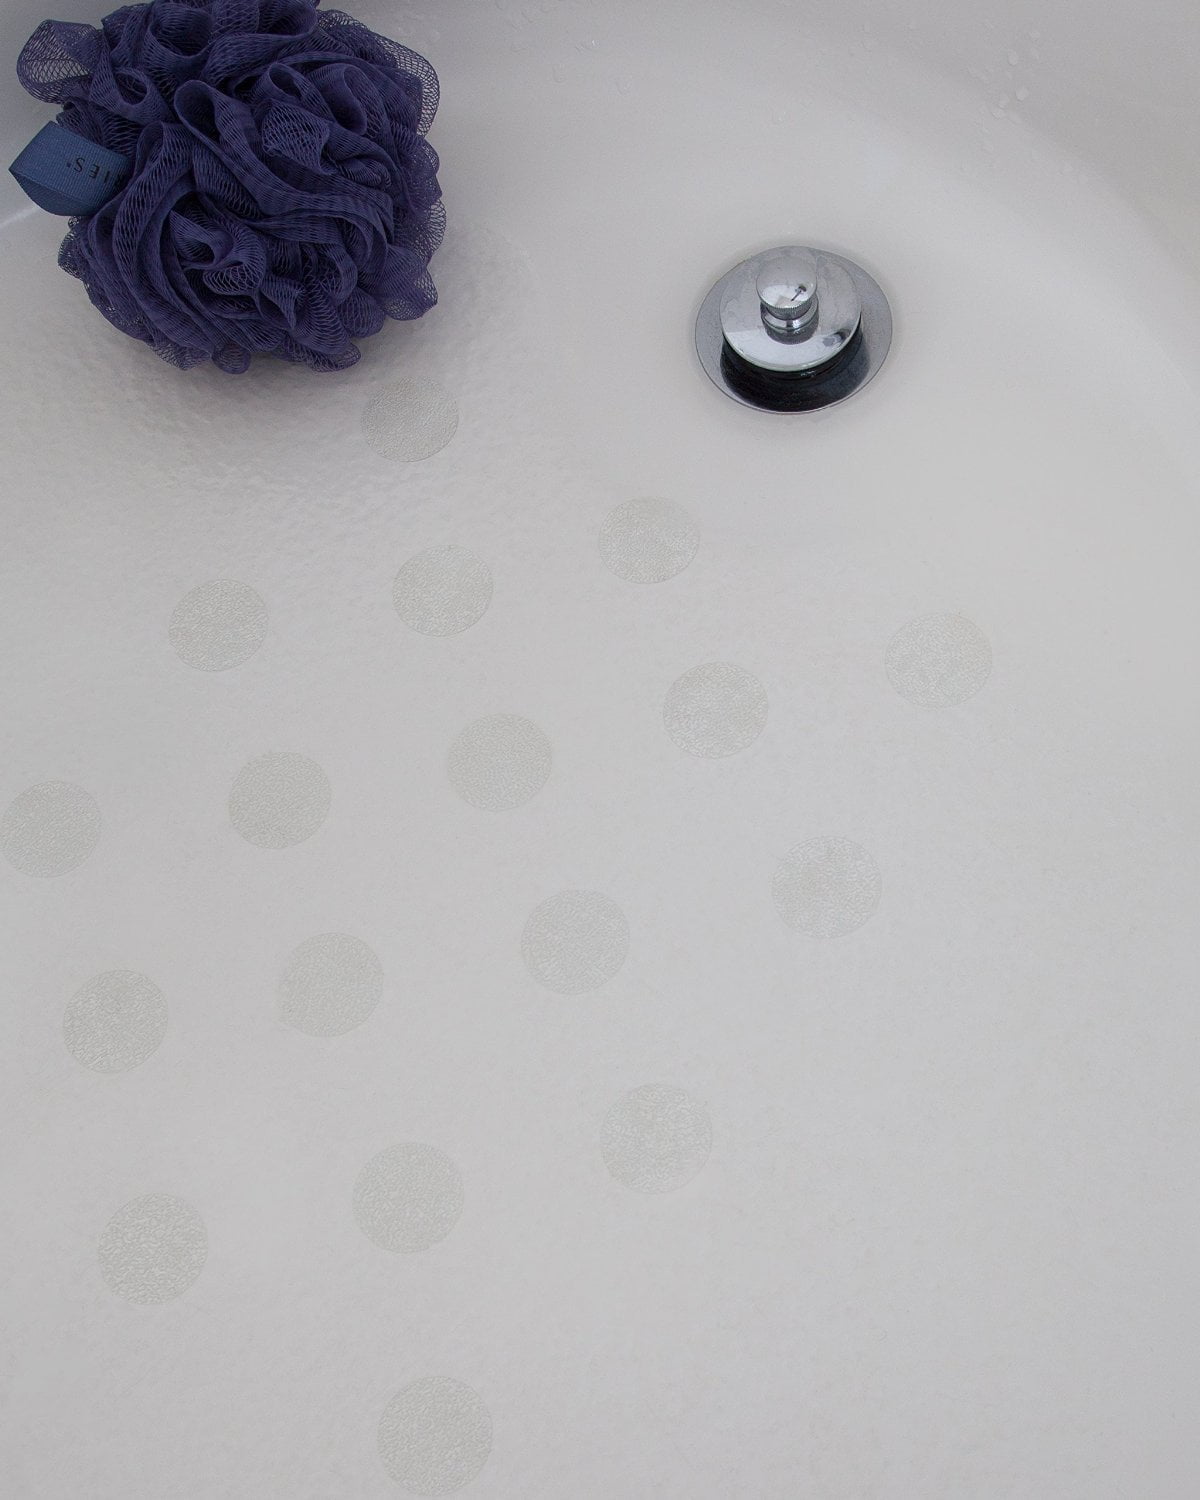 Non Slip Bathtub Shower Stickers, How To Make Bathtub Non Slippery